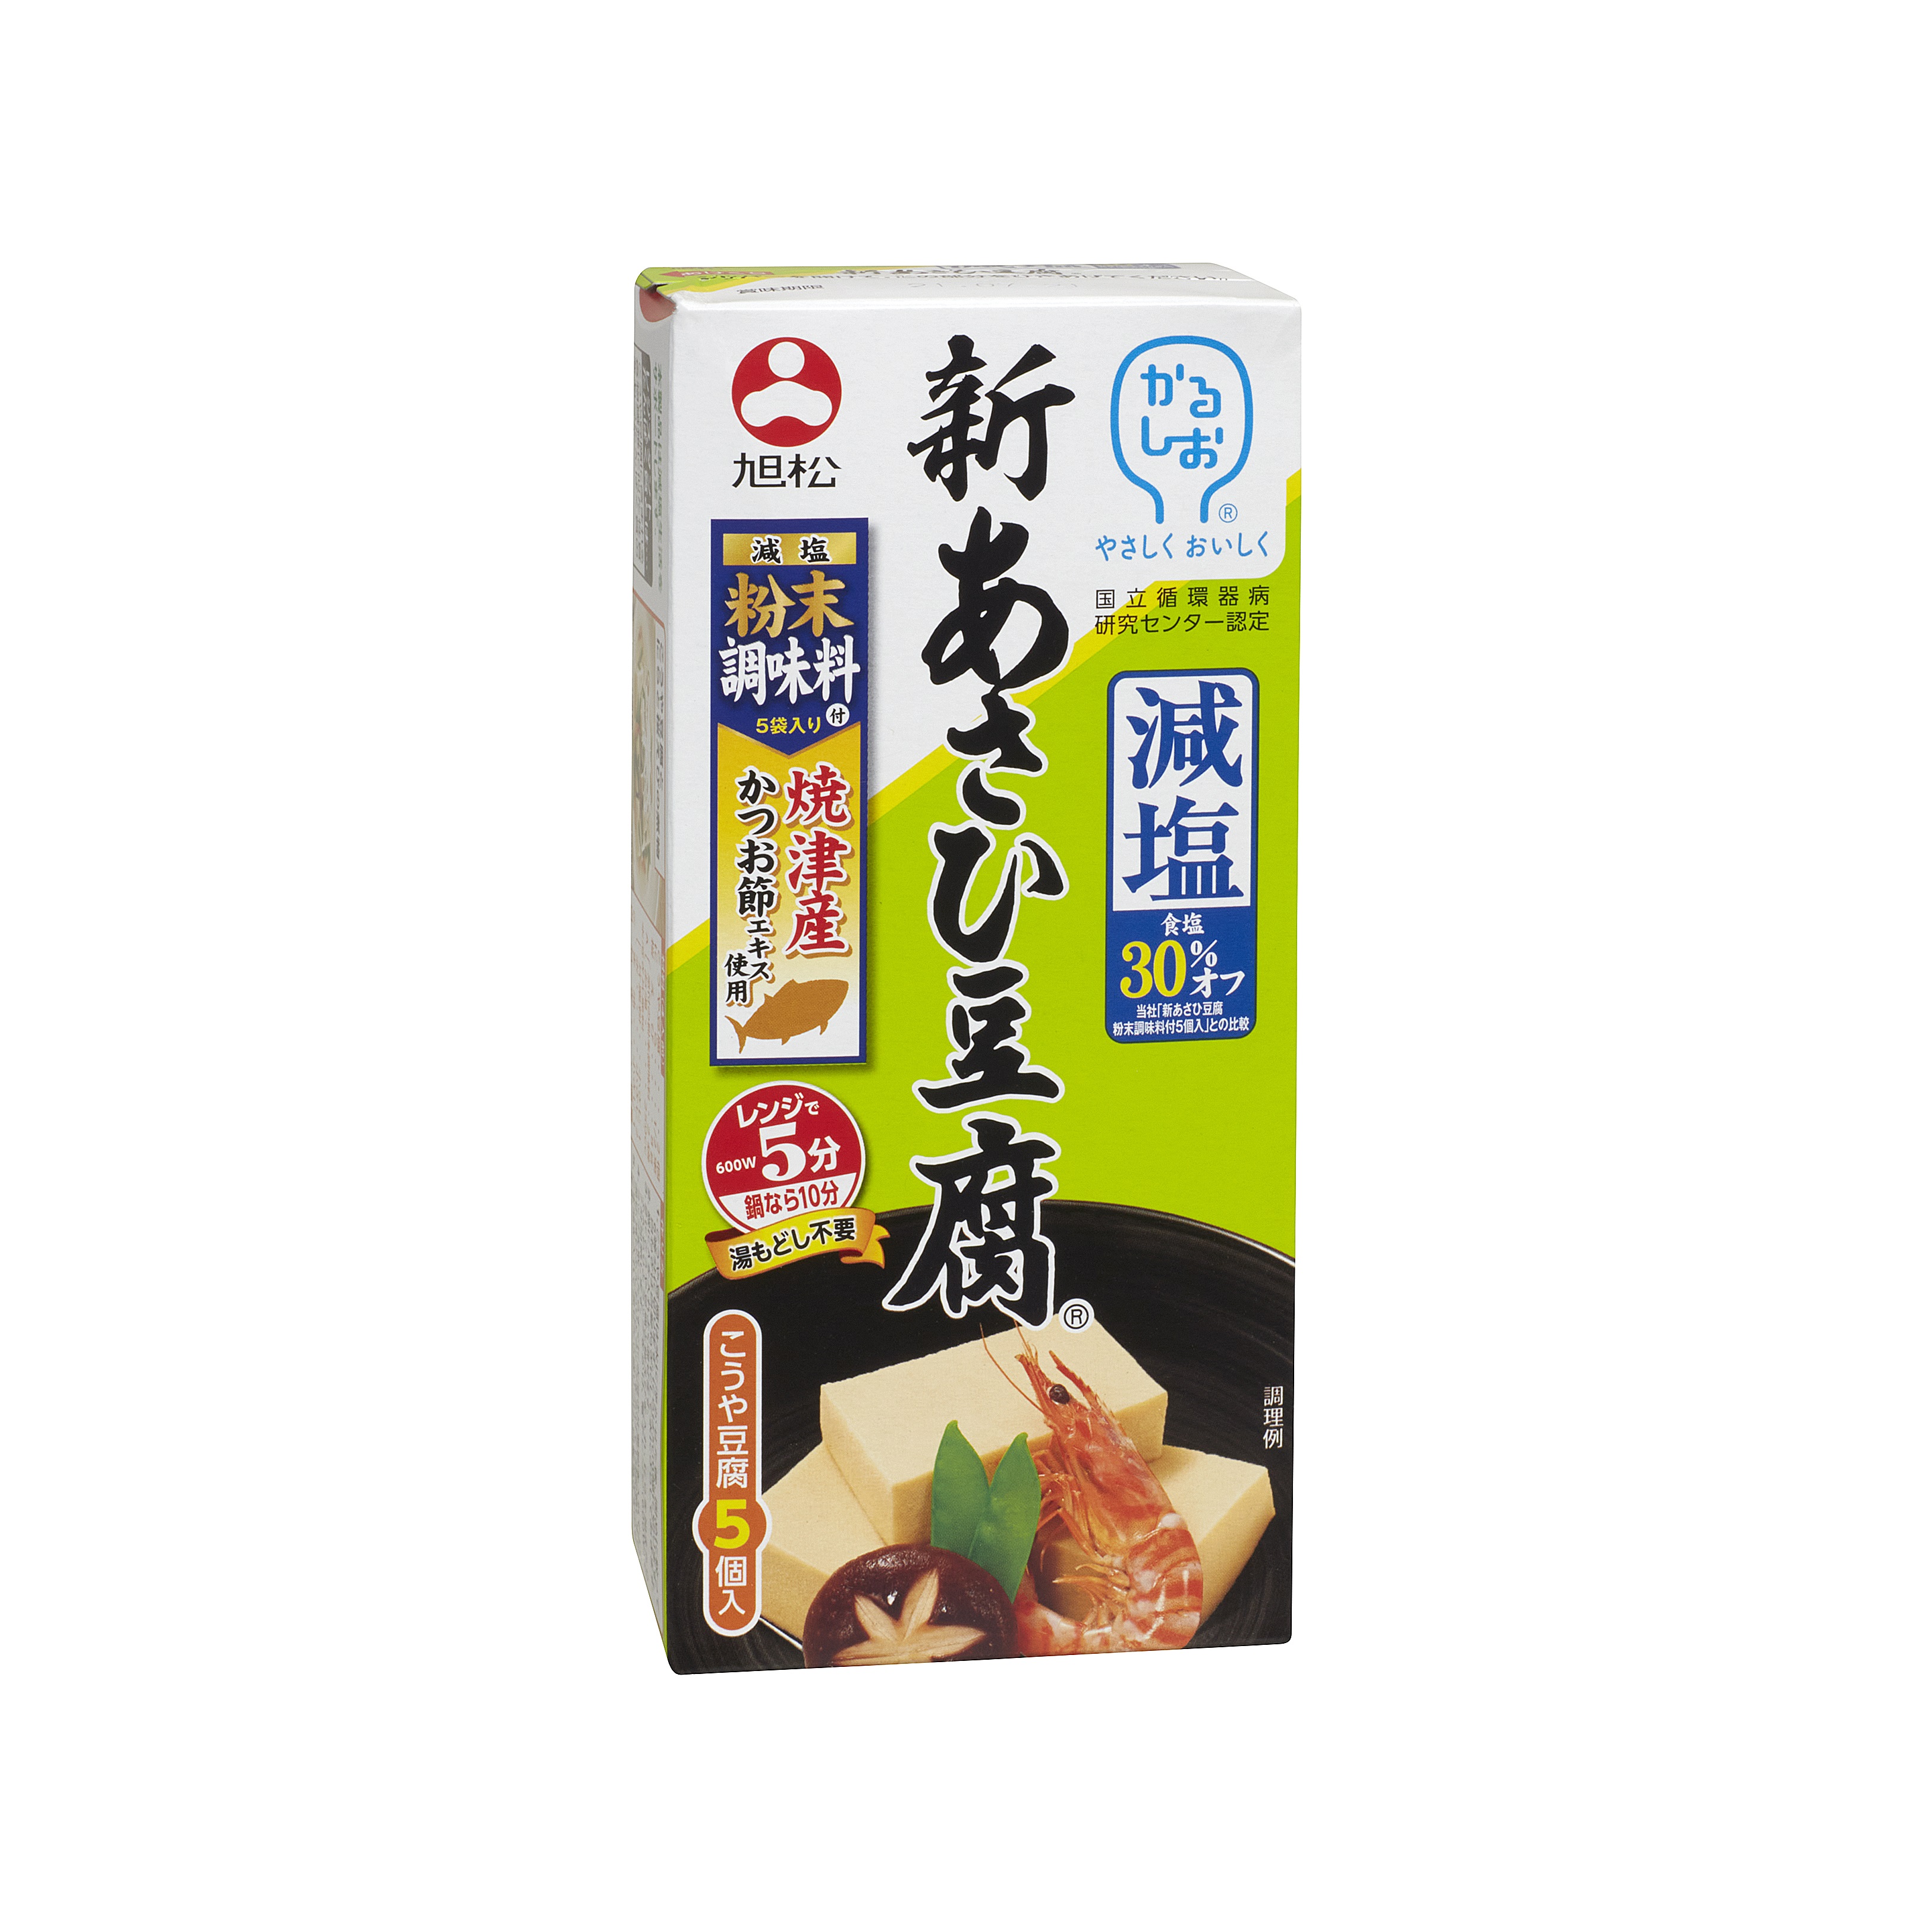 新あさひ豆腐 減塩粉末調味料付5個入 | 旭松食品